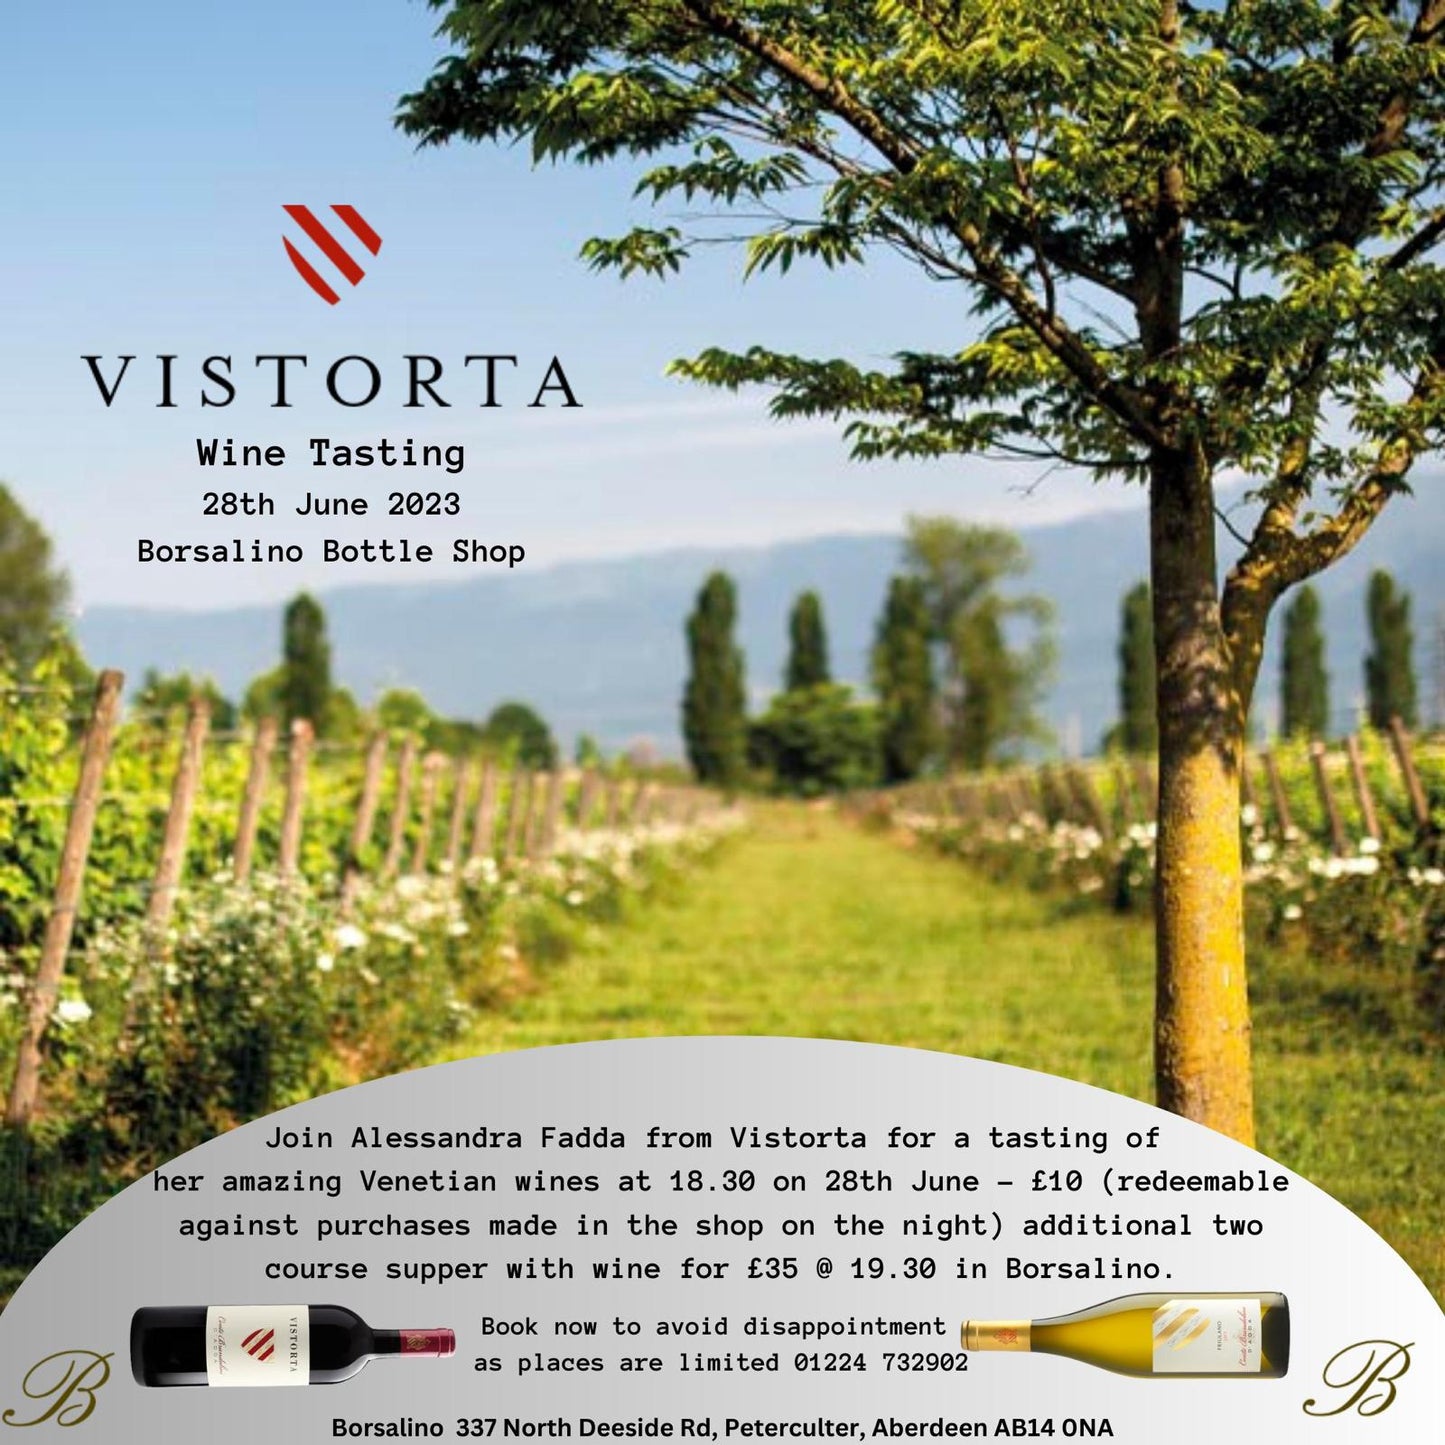 Vistorta Wine Tasting Event Ticket 28th June 2023 - Borsalino